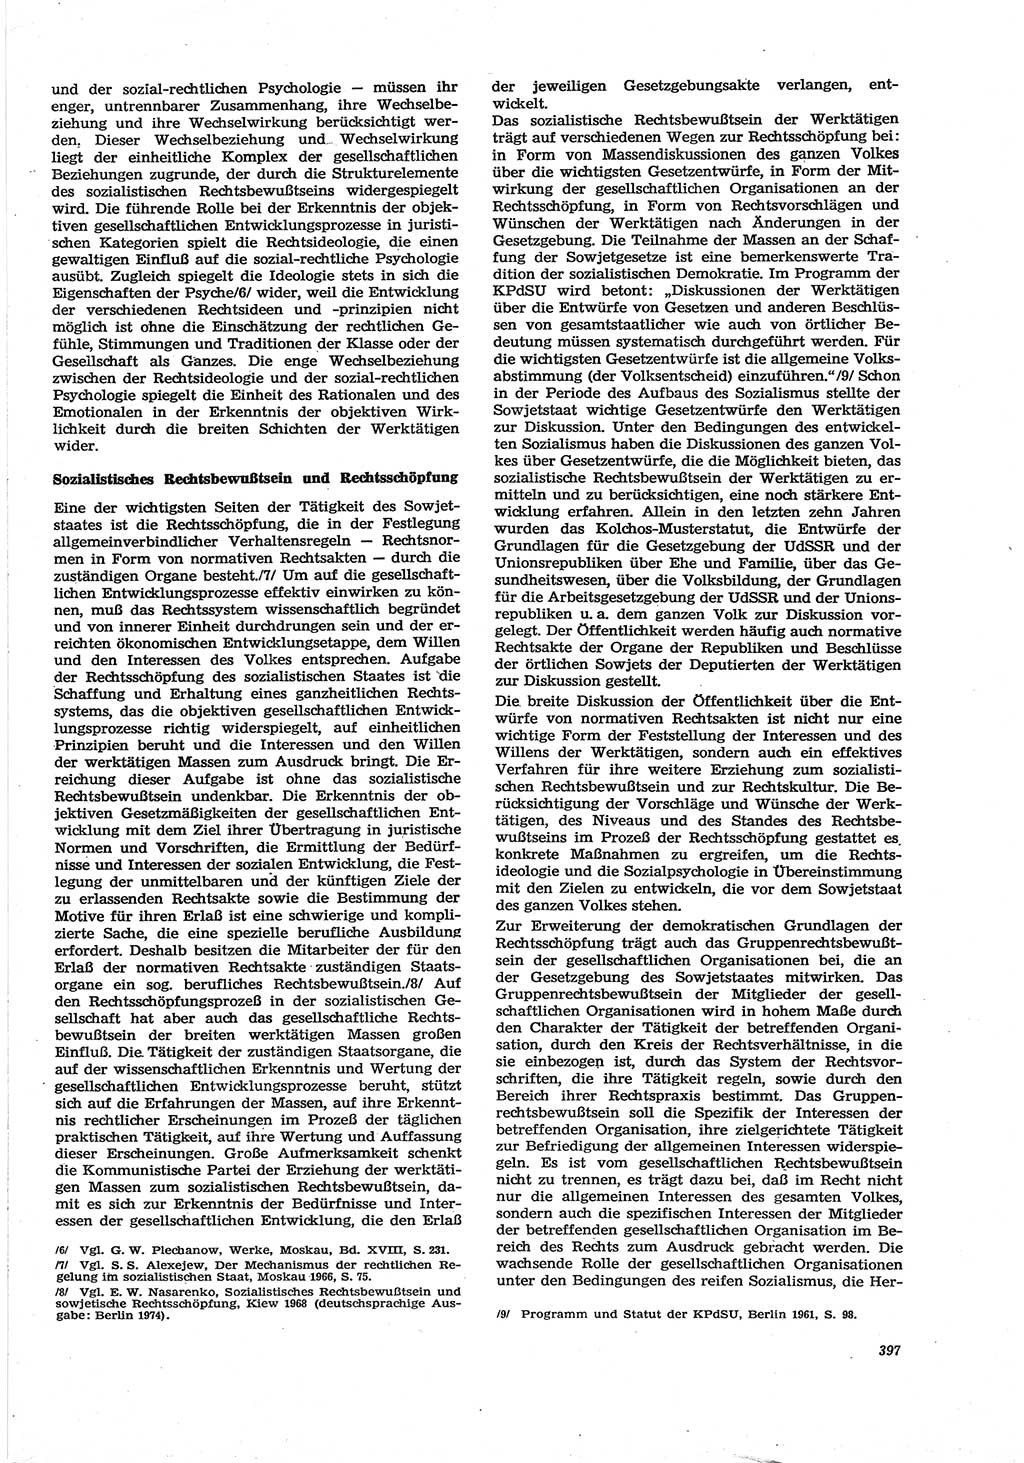 Neue Justiz (NJ), Zeitschrift für Recht und Rechtswissenschaft [Deutsche Demokratische Republik (DDR)], 30. Jahrgang 1976, Seite 397 (NJ DDR 1976, S. 397)